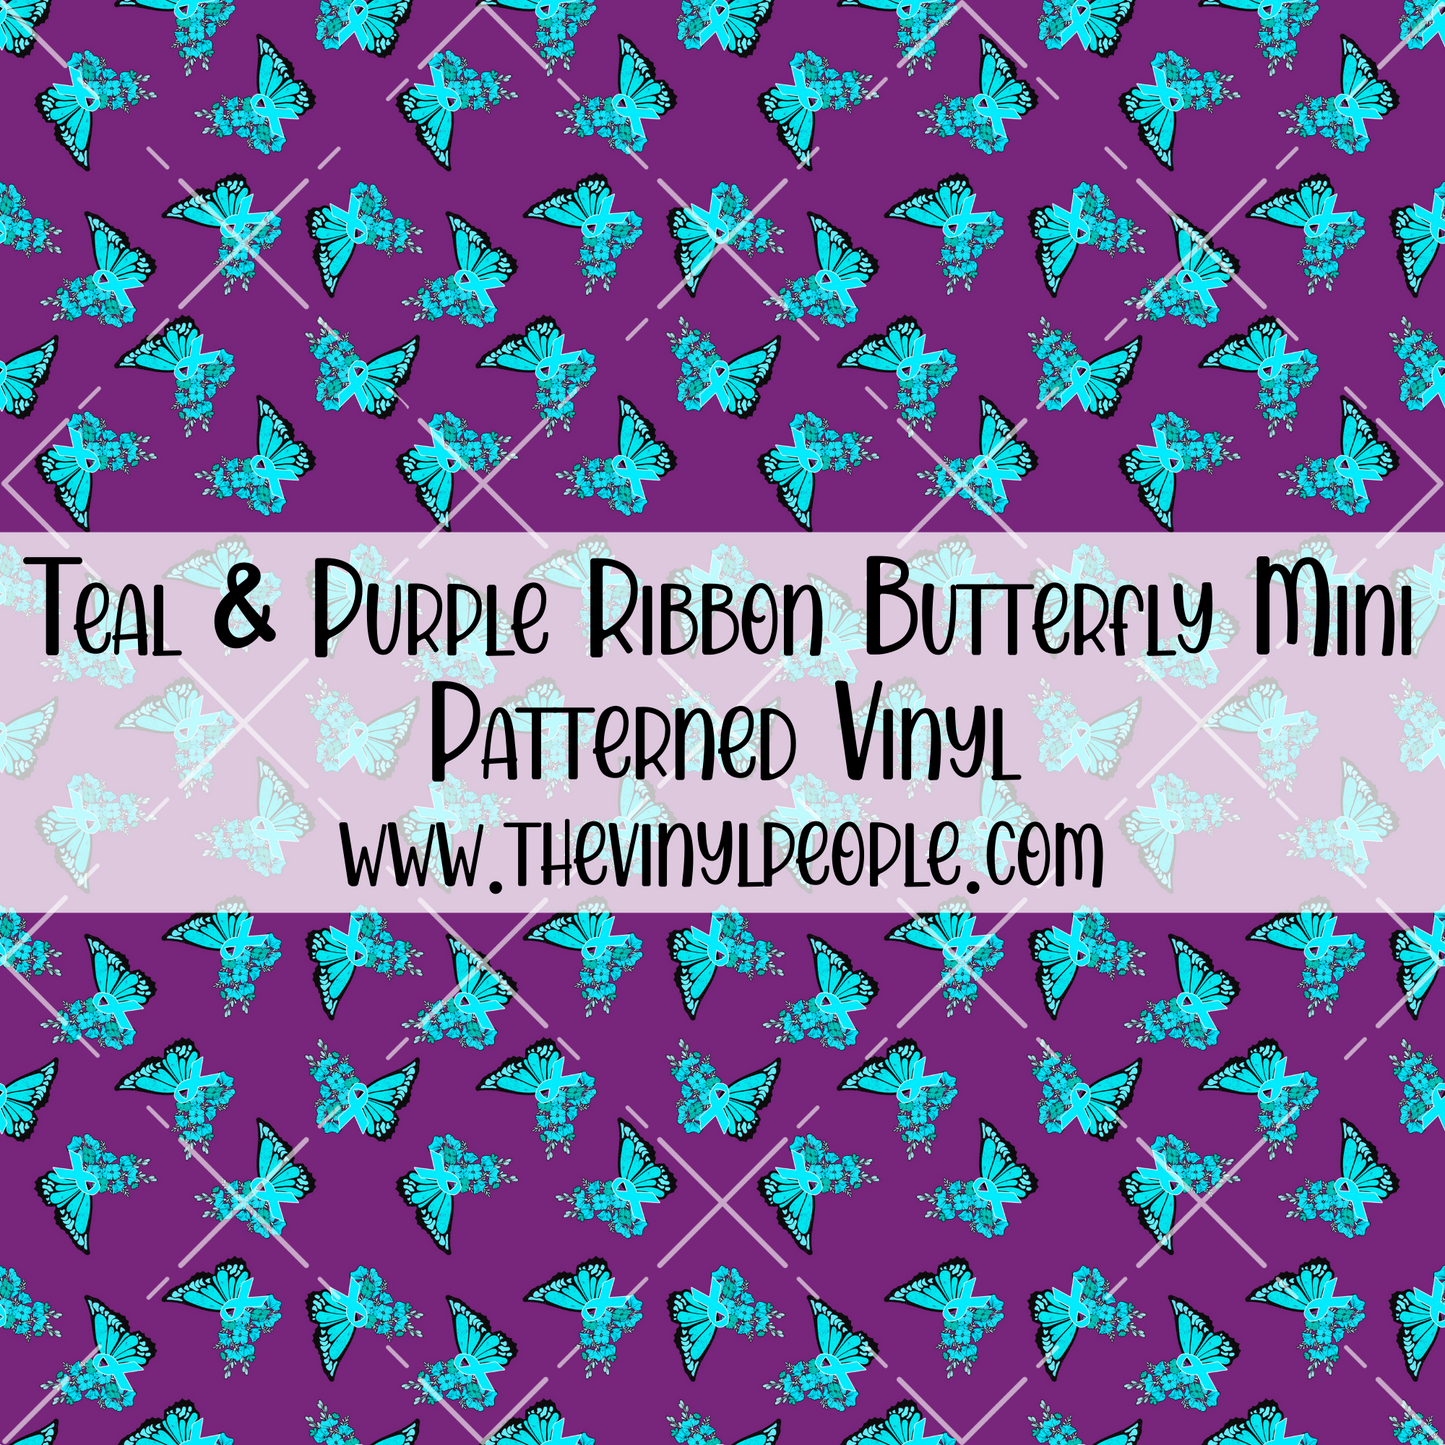 Teal & Purple Ribbon Butterfly Patterned Vinyl